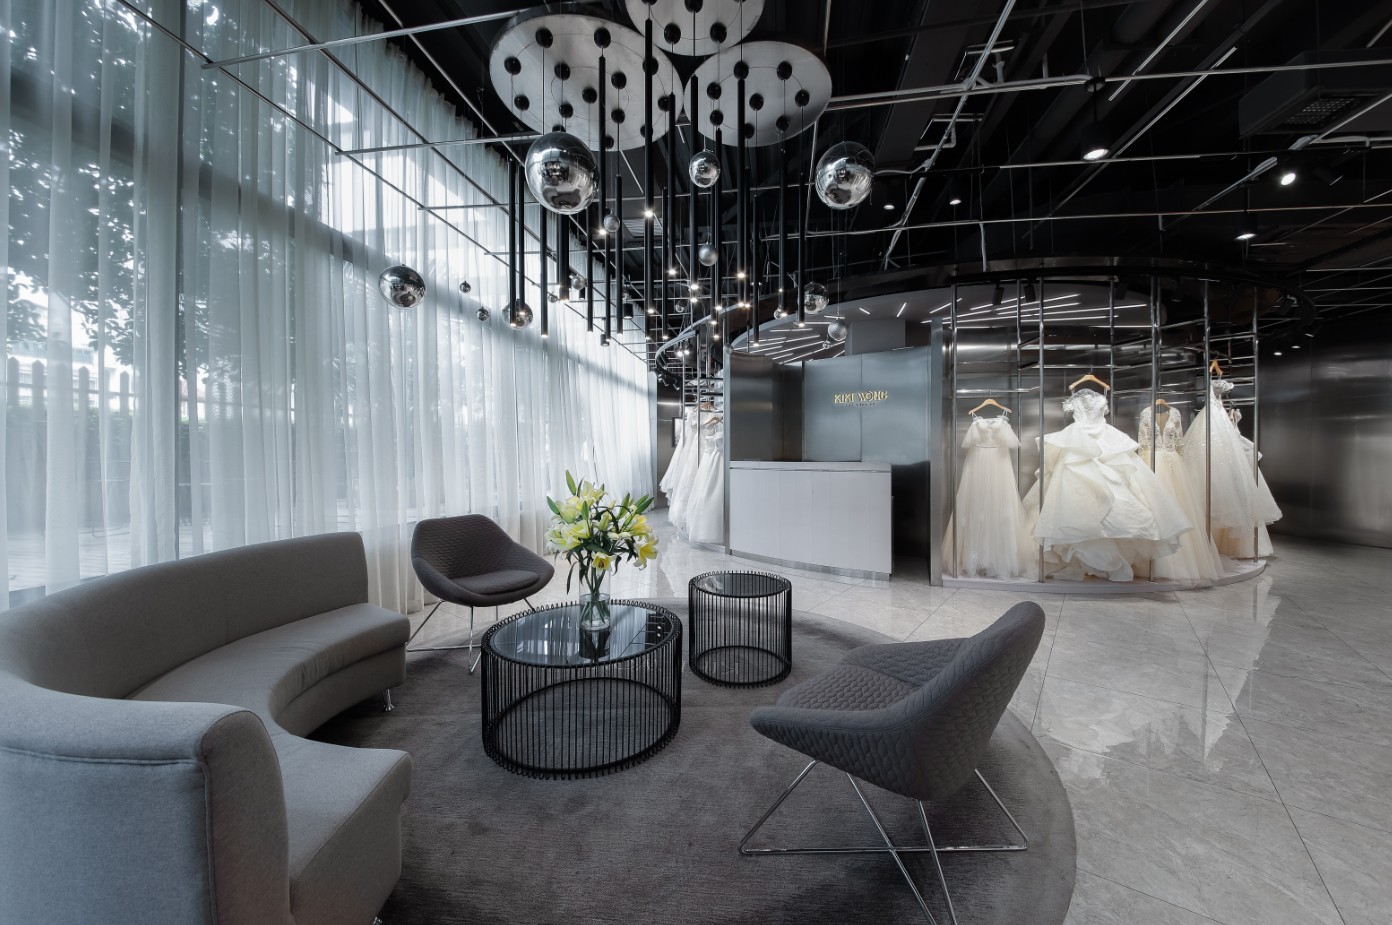 富有高级美感的kiki wong婚纱店室内设计|j&a杰恩设计